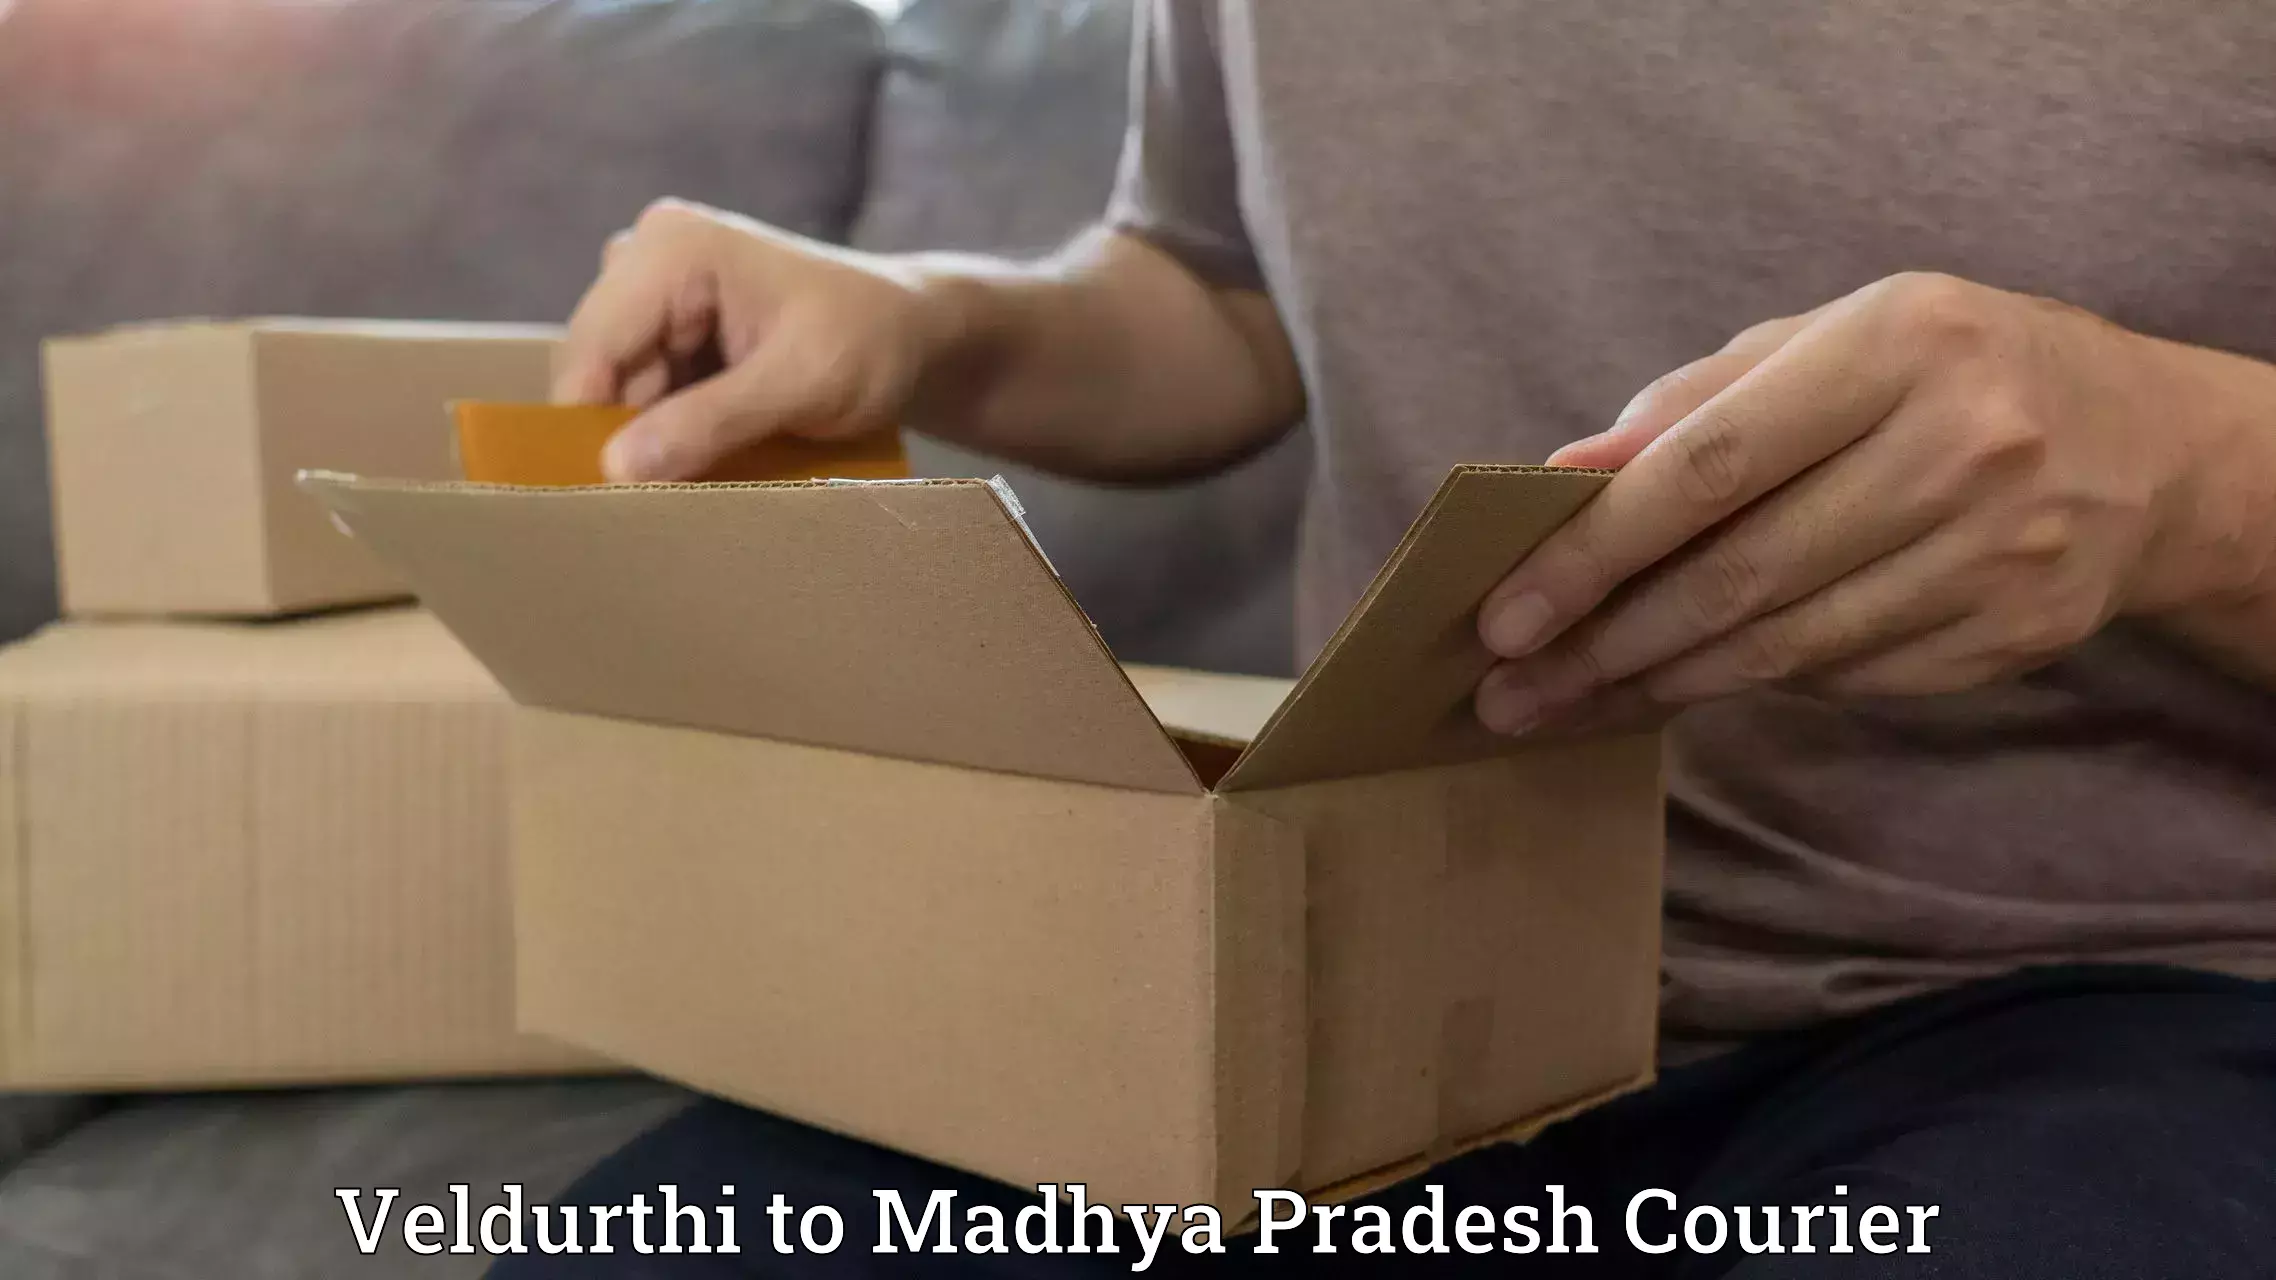 Urgent courier needs Veldurthi to Pachore